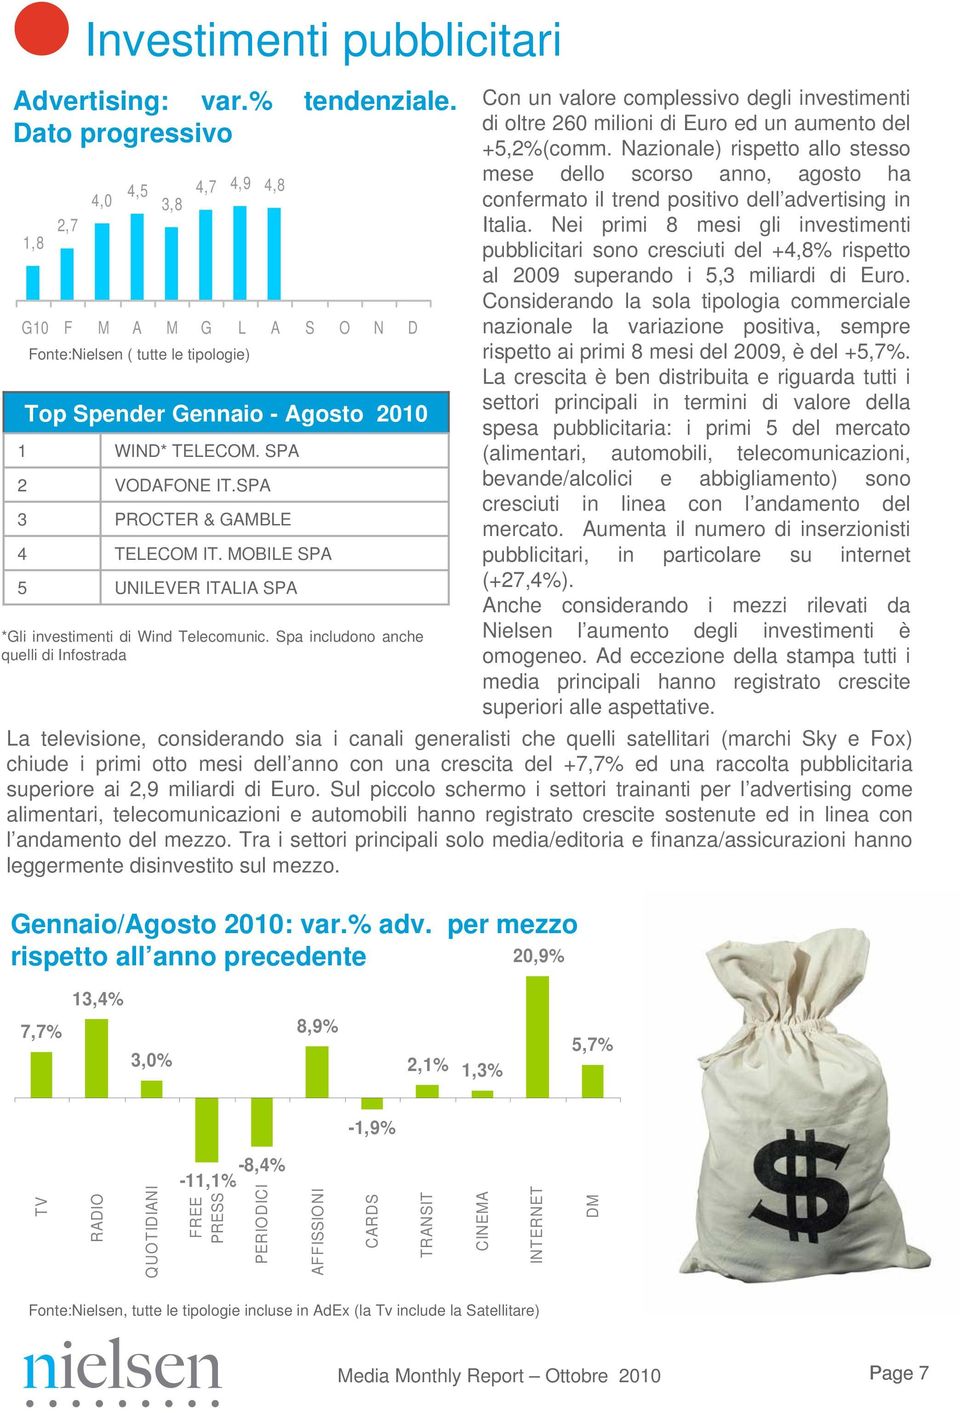 SPA PROCTER & GAMBLE TELECOM IT. MOBILE SPA UNILEVER ITALIA SPA *Gli investimenti di Wind Telecomunic.